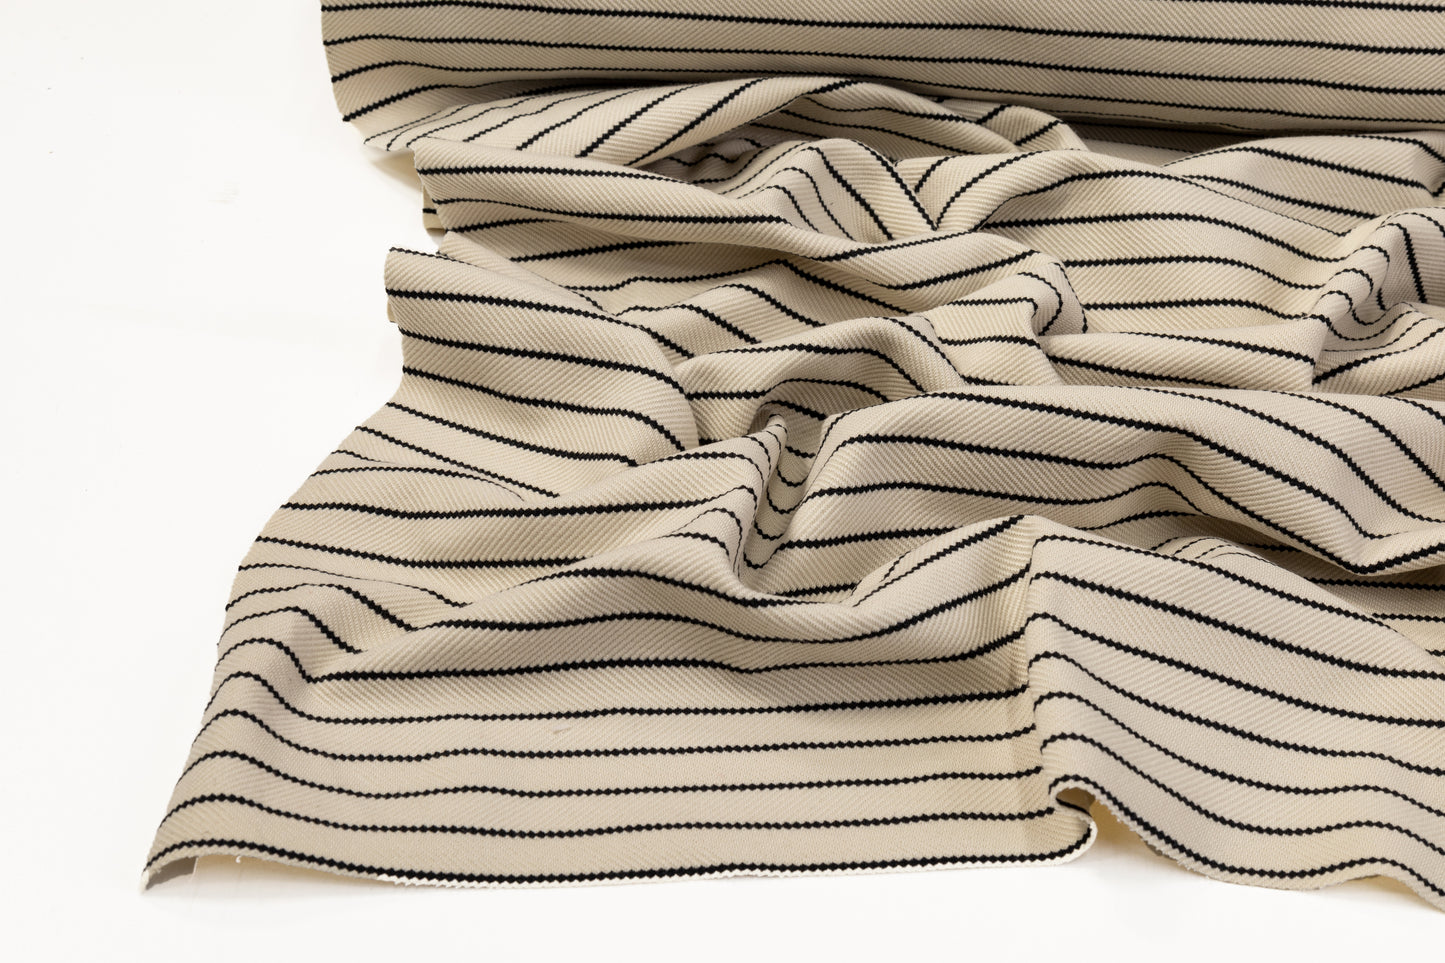 Striped Rayon Jersey Knit - Beige / Black